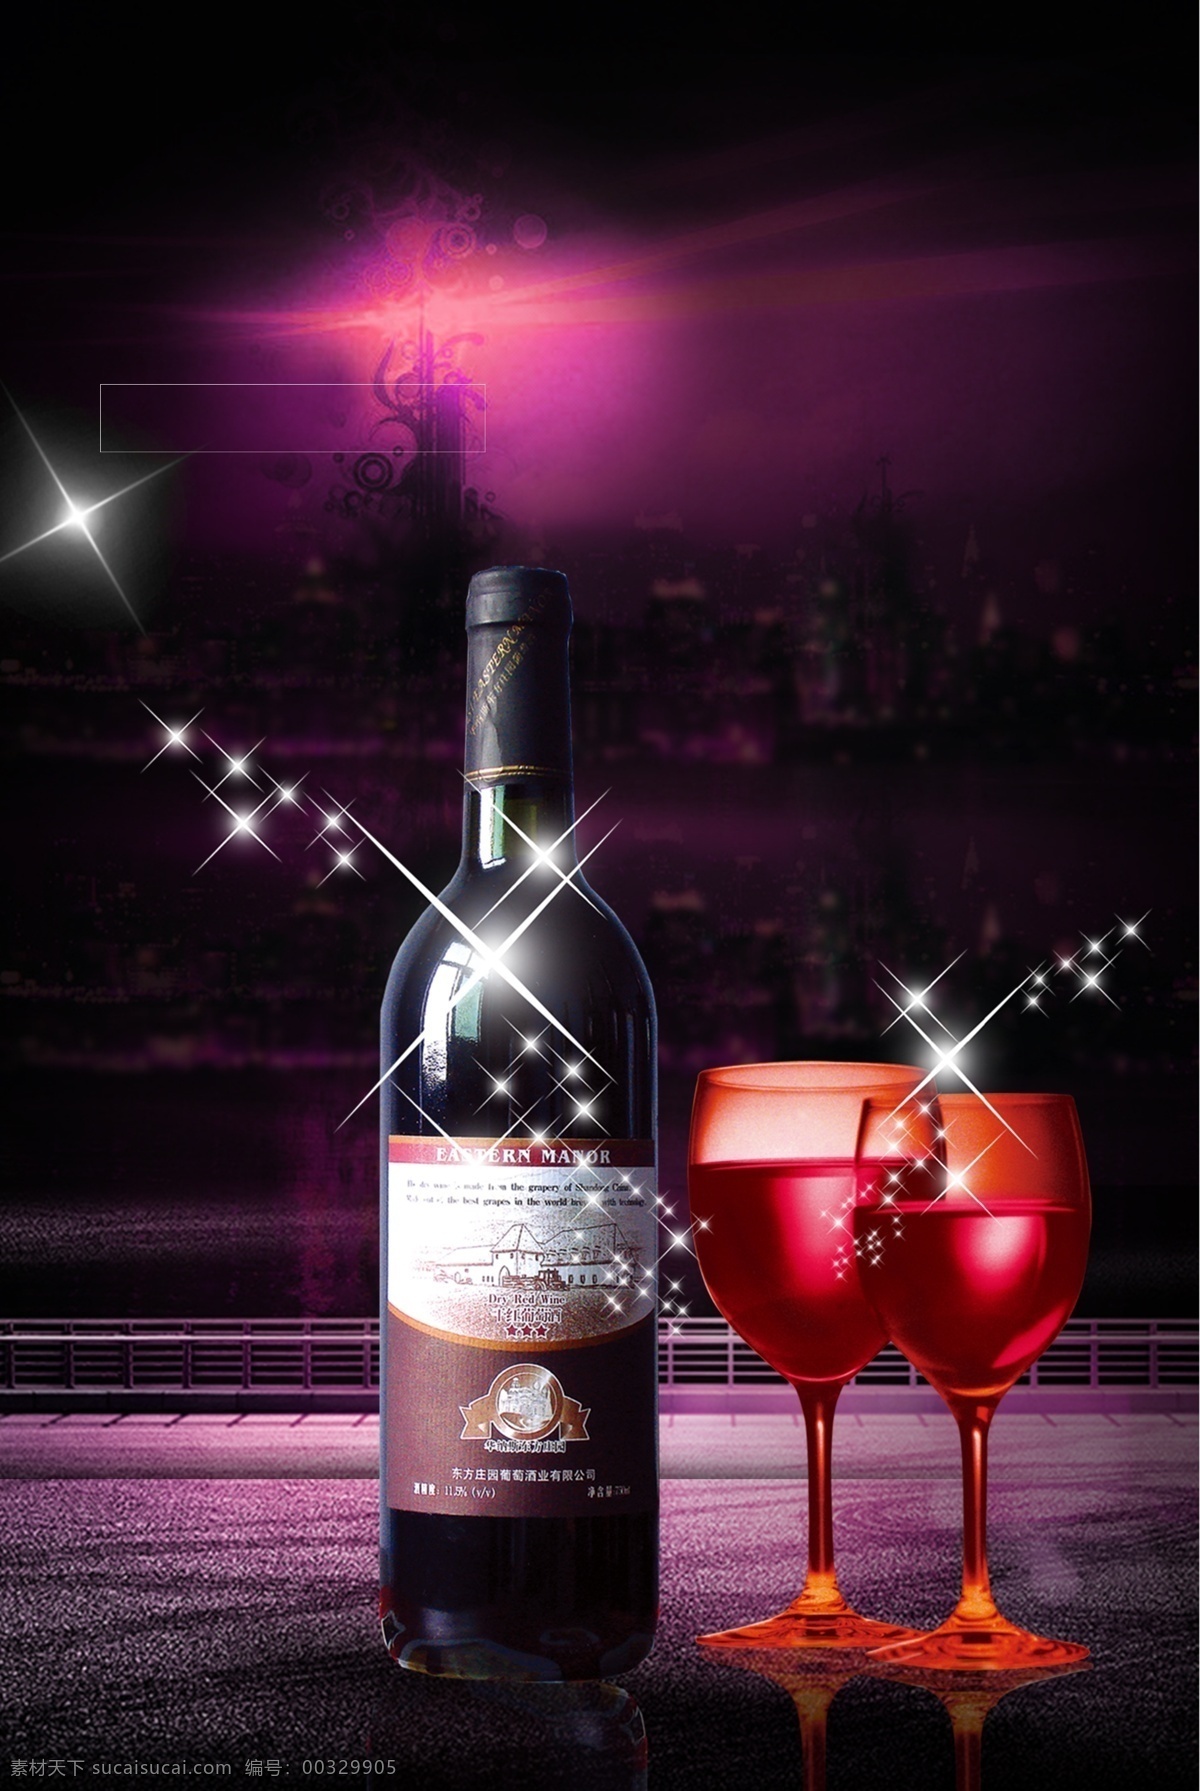 红酒 品鉴 大气 粉 紫色 夜空 海报 红酒品鉴 葡萄酒 干红 促销 商务 粉紫色夜空 星光 红酒杯